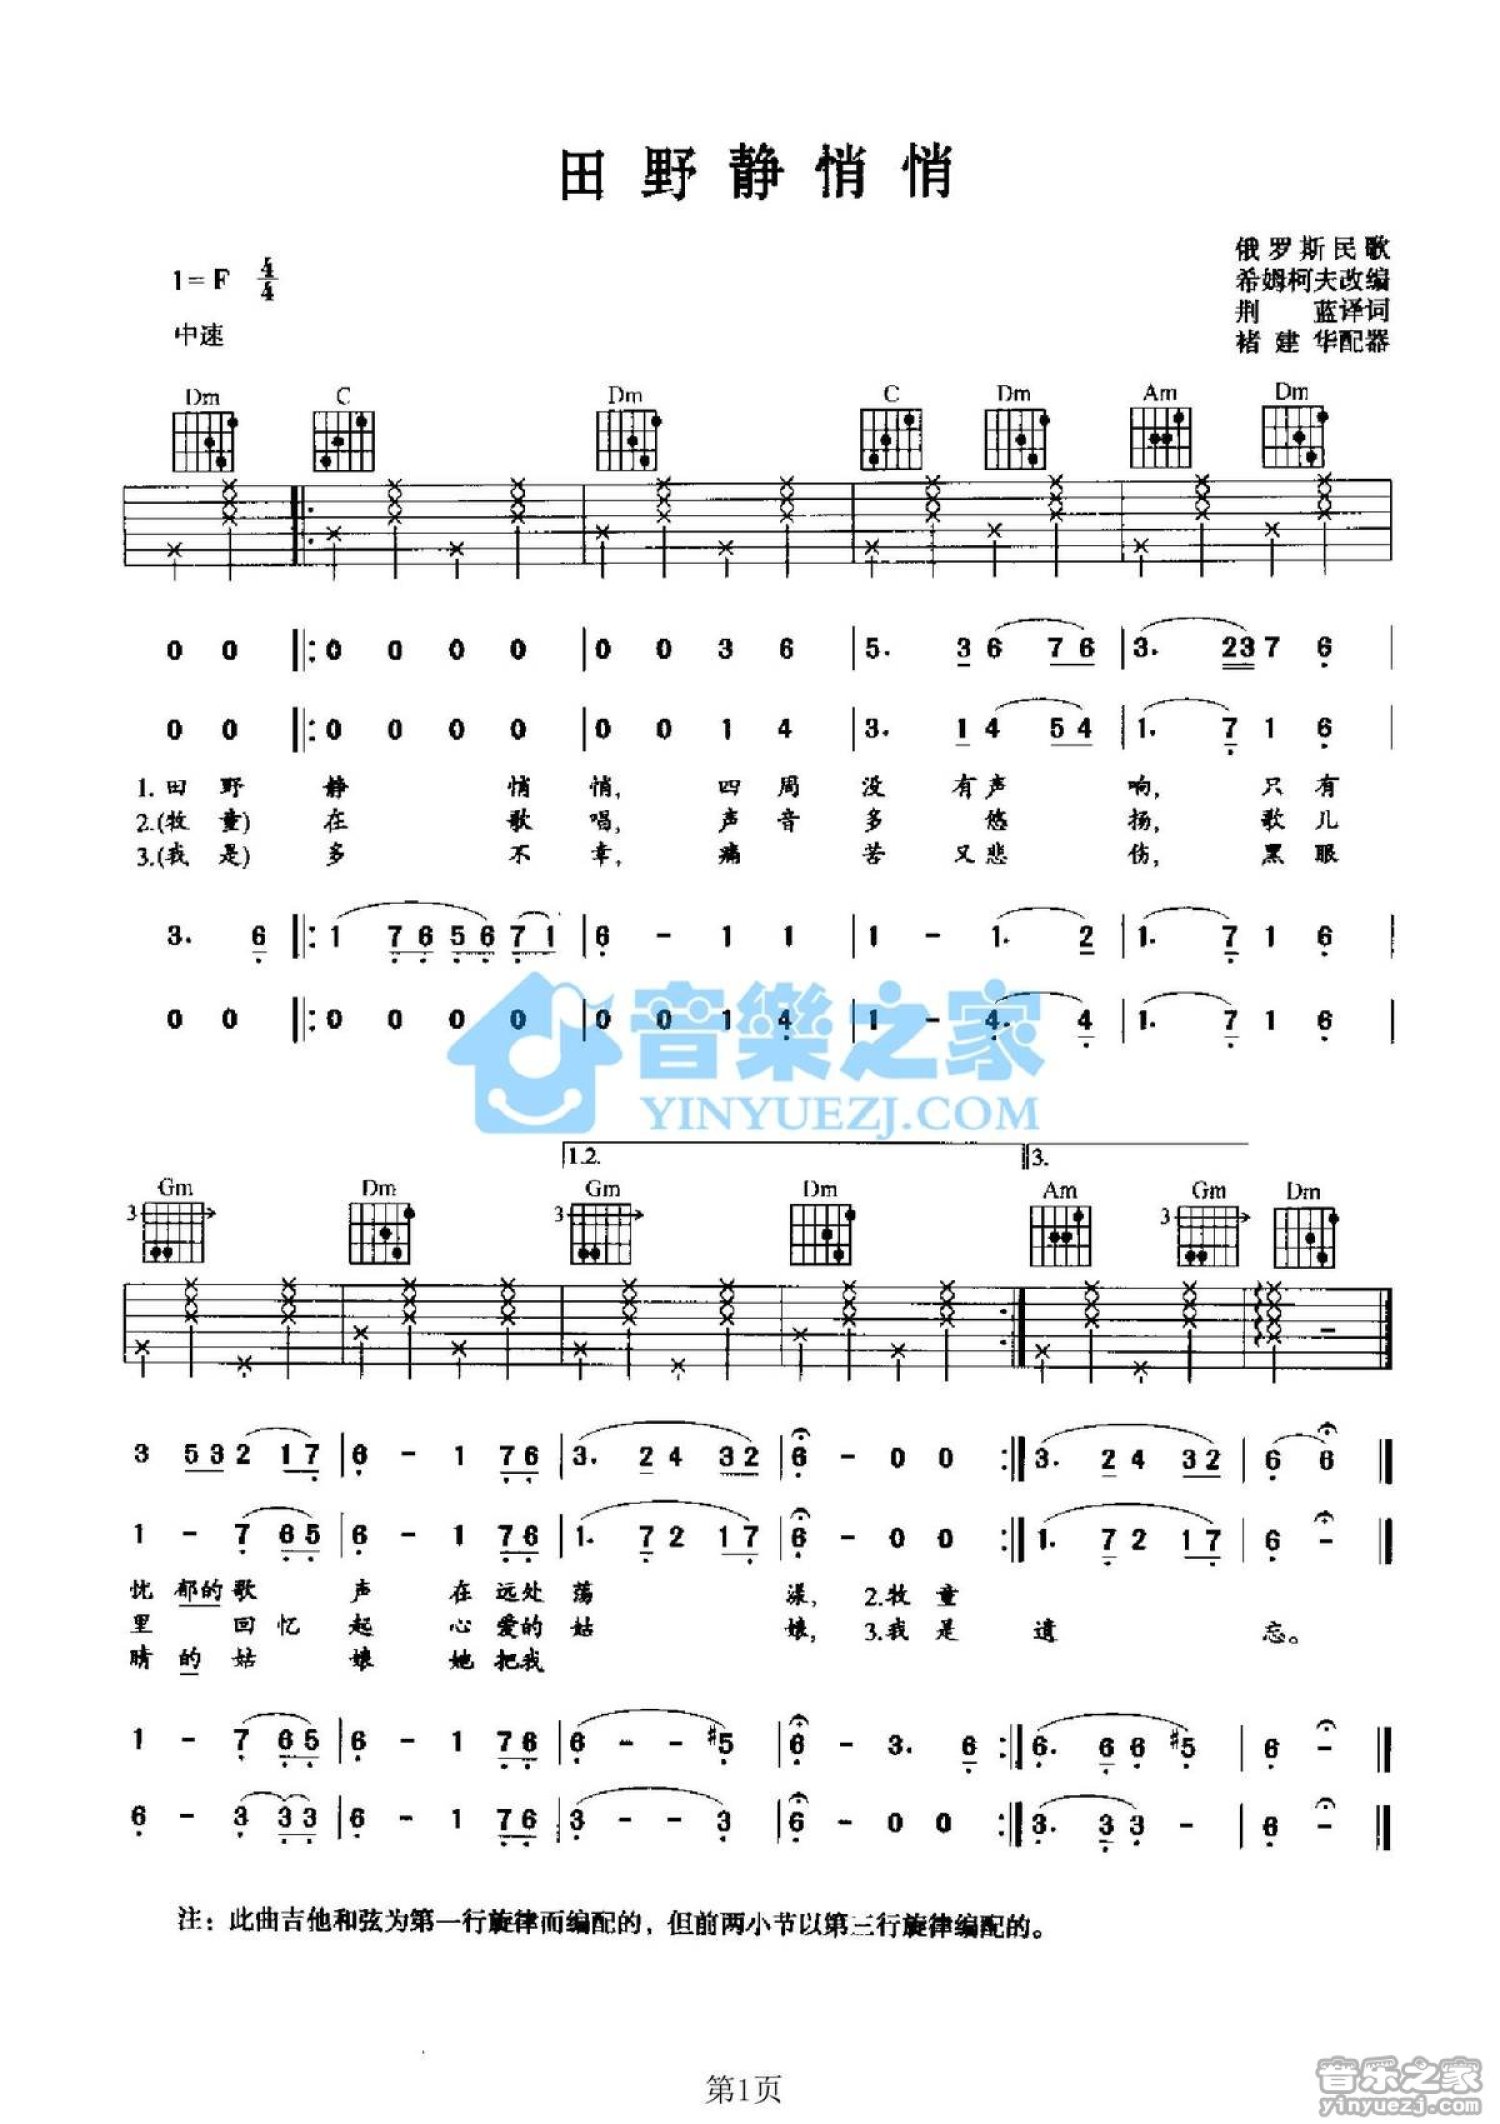 【初学推荐-超详细】简单版喀秋莎吉他指弹谱-必弹经典红色俄罗斯二战歌曲 - 哔哩哔哩